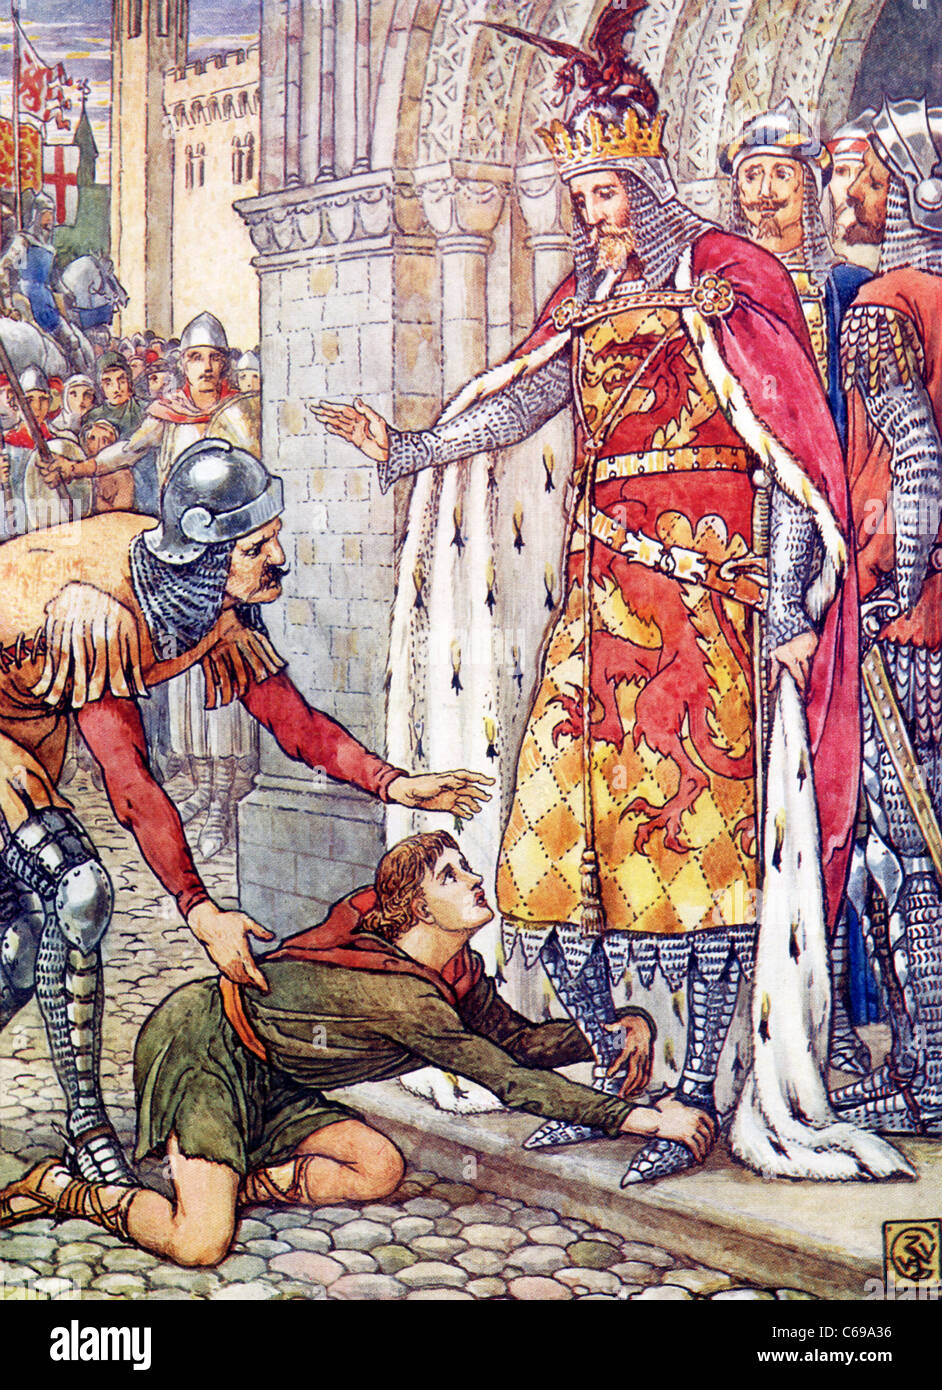 Nella leggenda arturiana, il giovane Owen pagina salvata King Arthur a partire dalla mezzanotte di omicidio a mano del male Sir Turquine. Foto Stock